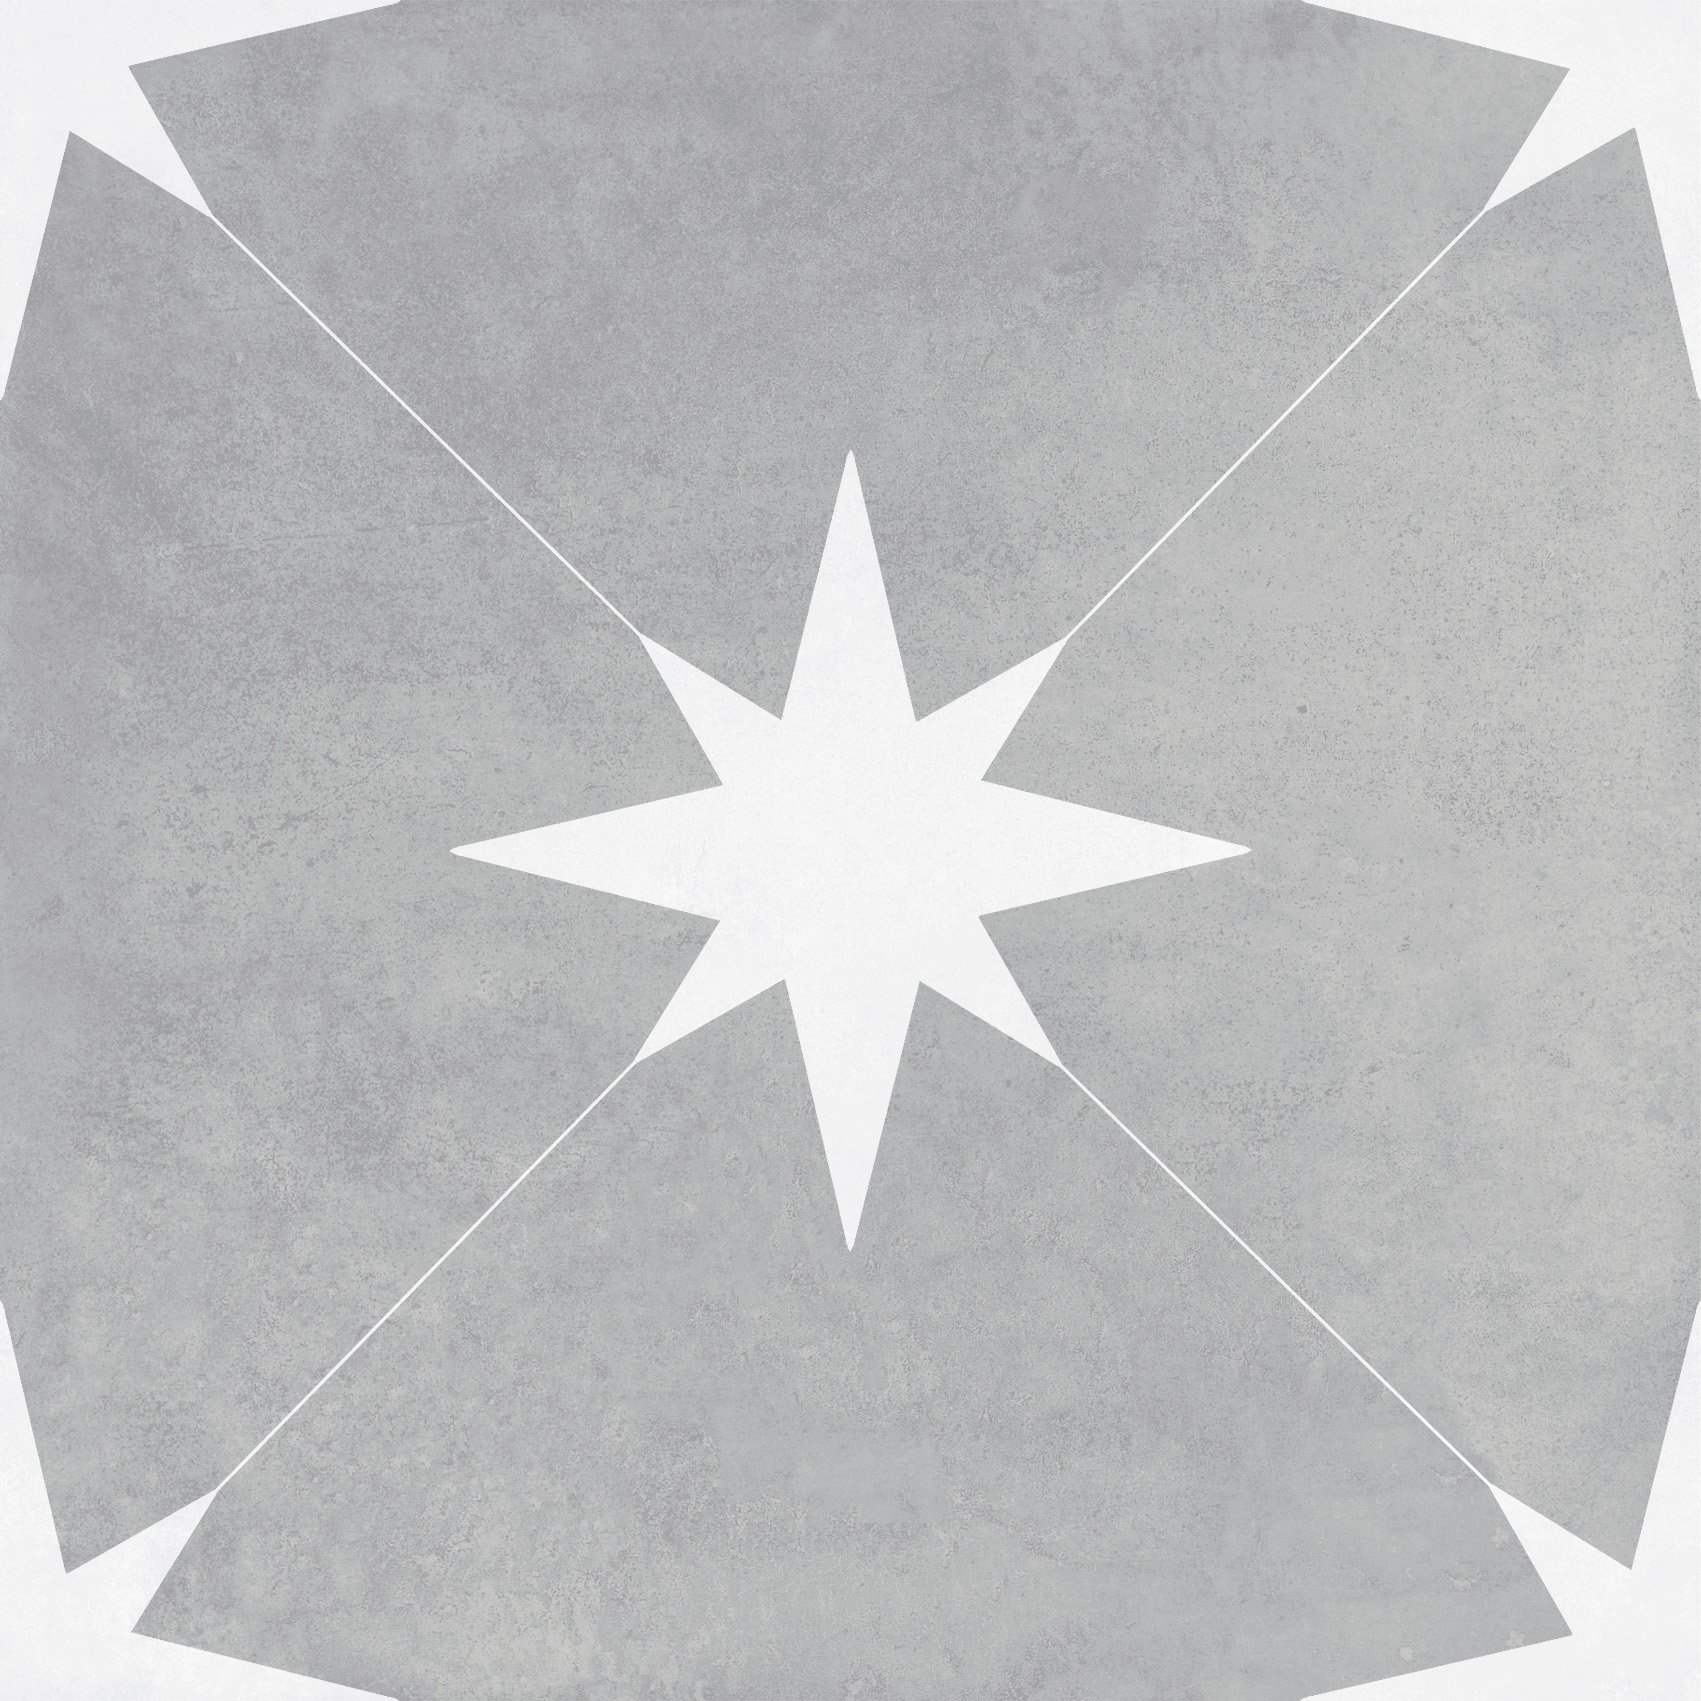 Retro-Fliese Sternenmuster Ponent grey graue Sterne Bodenfliesen Wandfliesen grau weiss